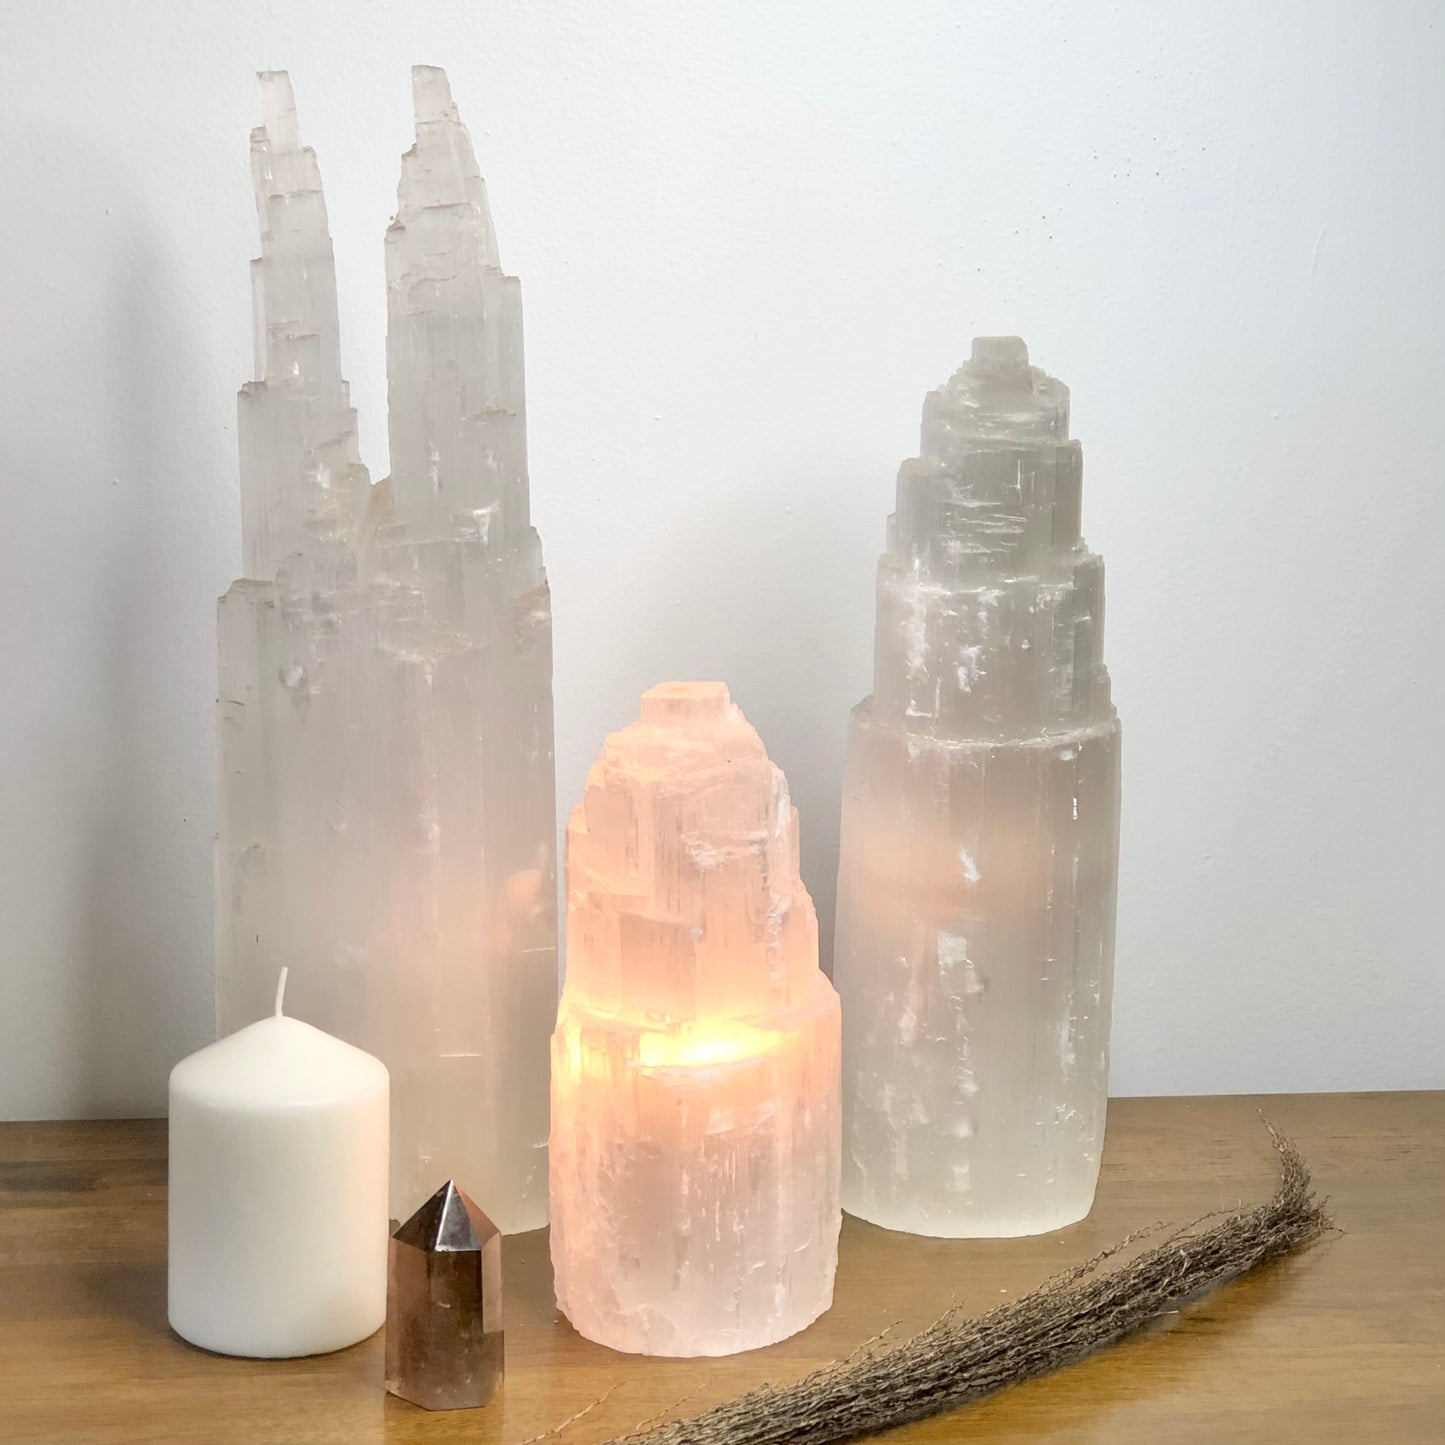 Selenite crystal tower lamp